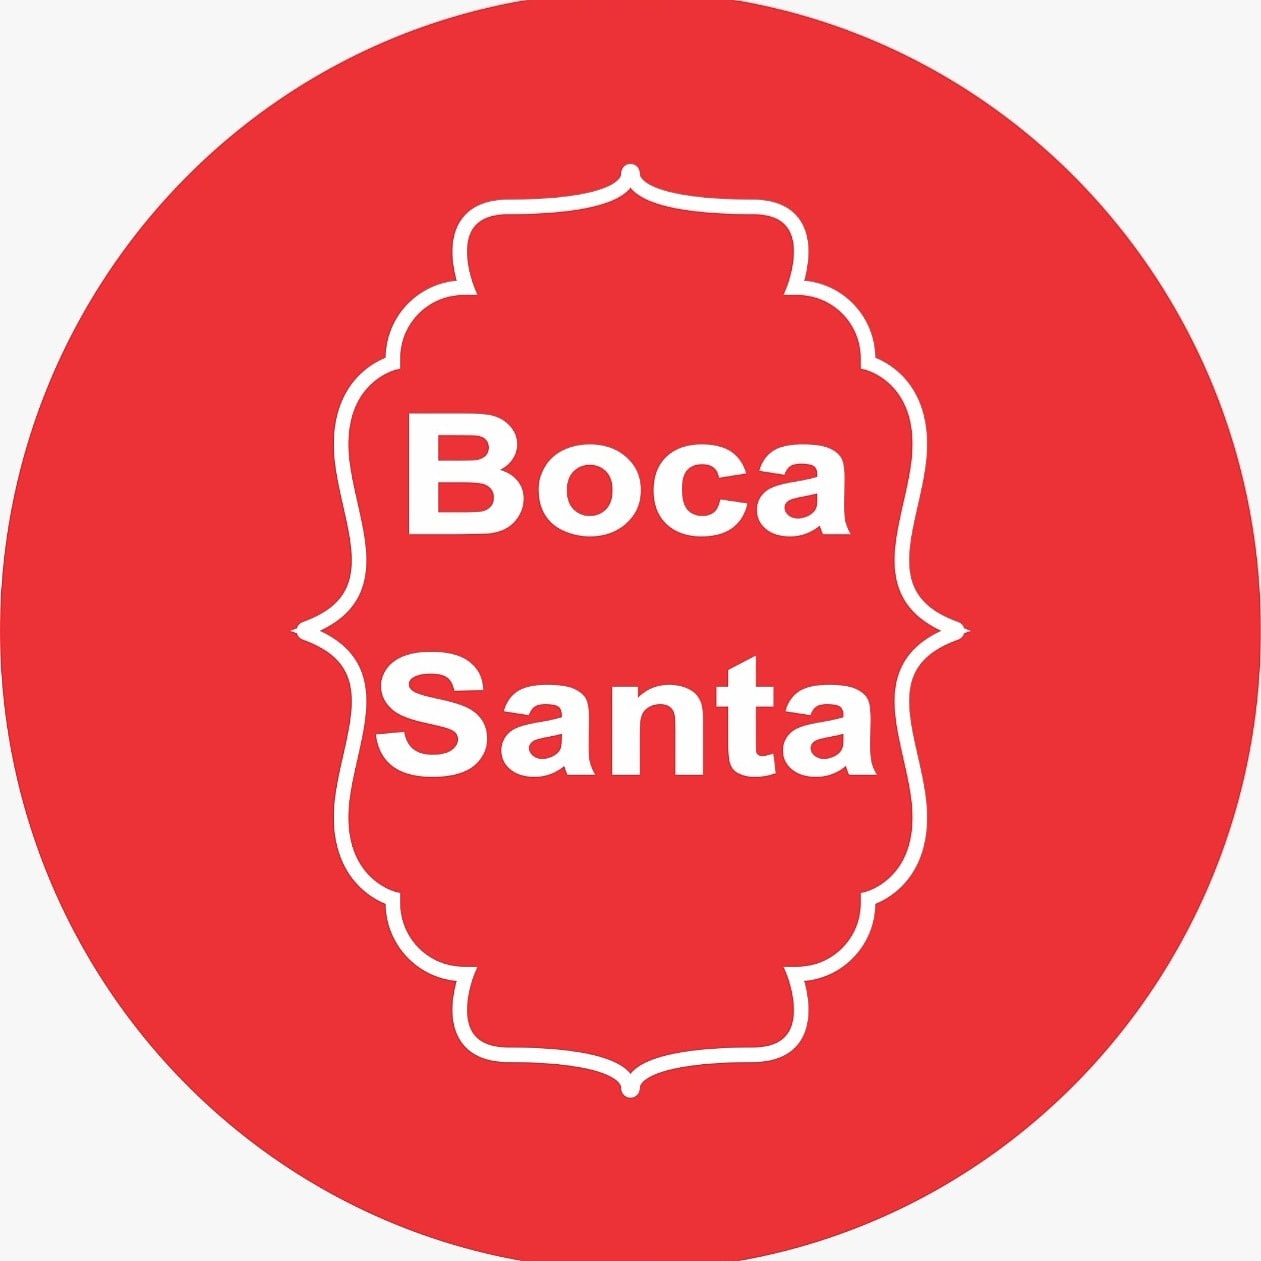 Boca Santa